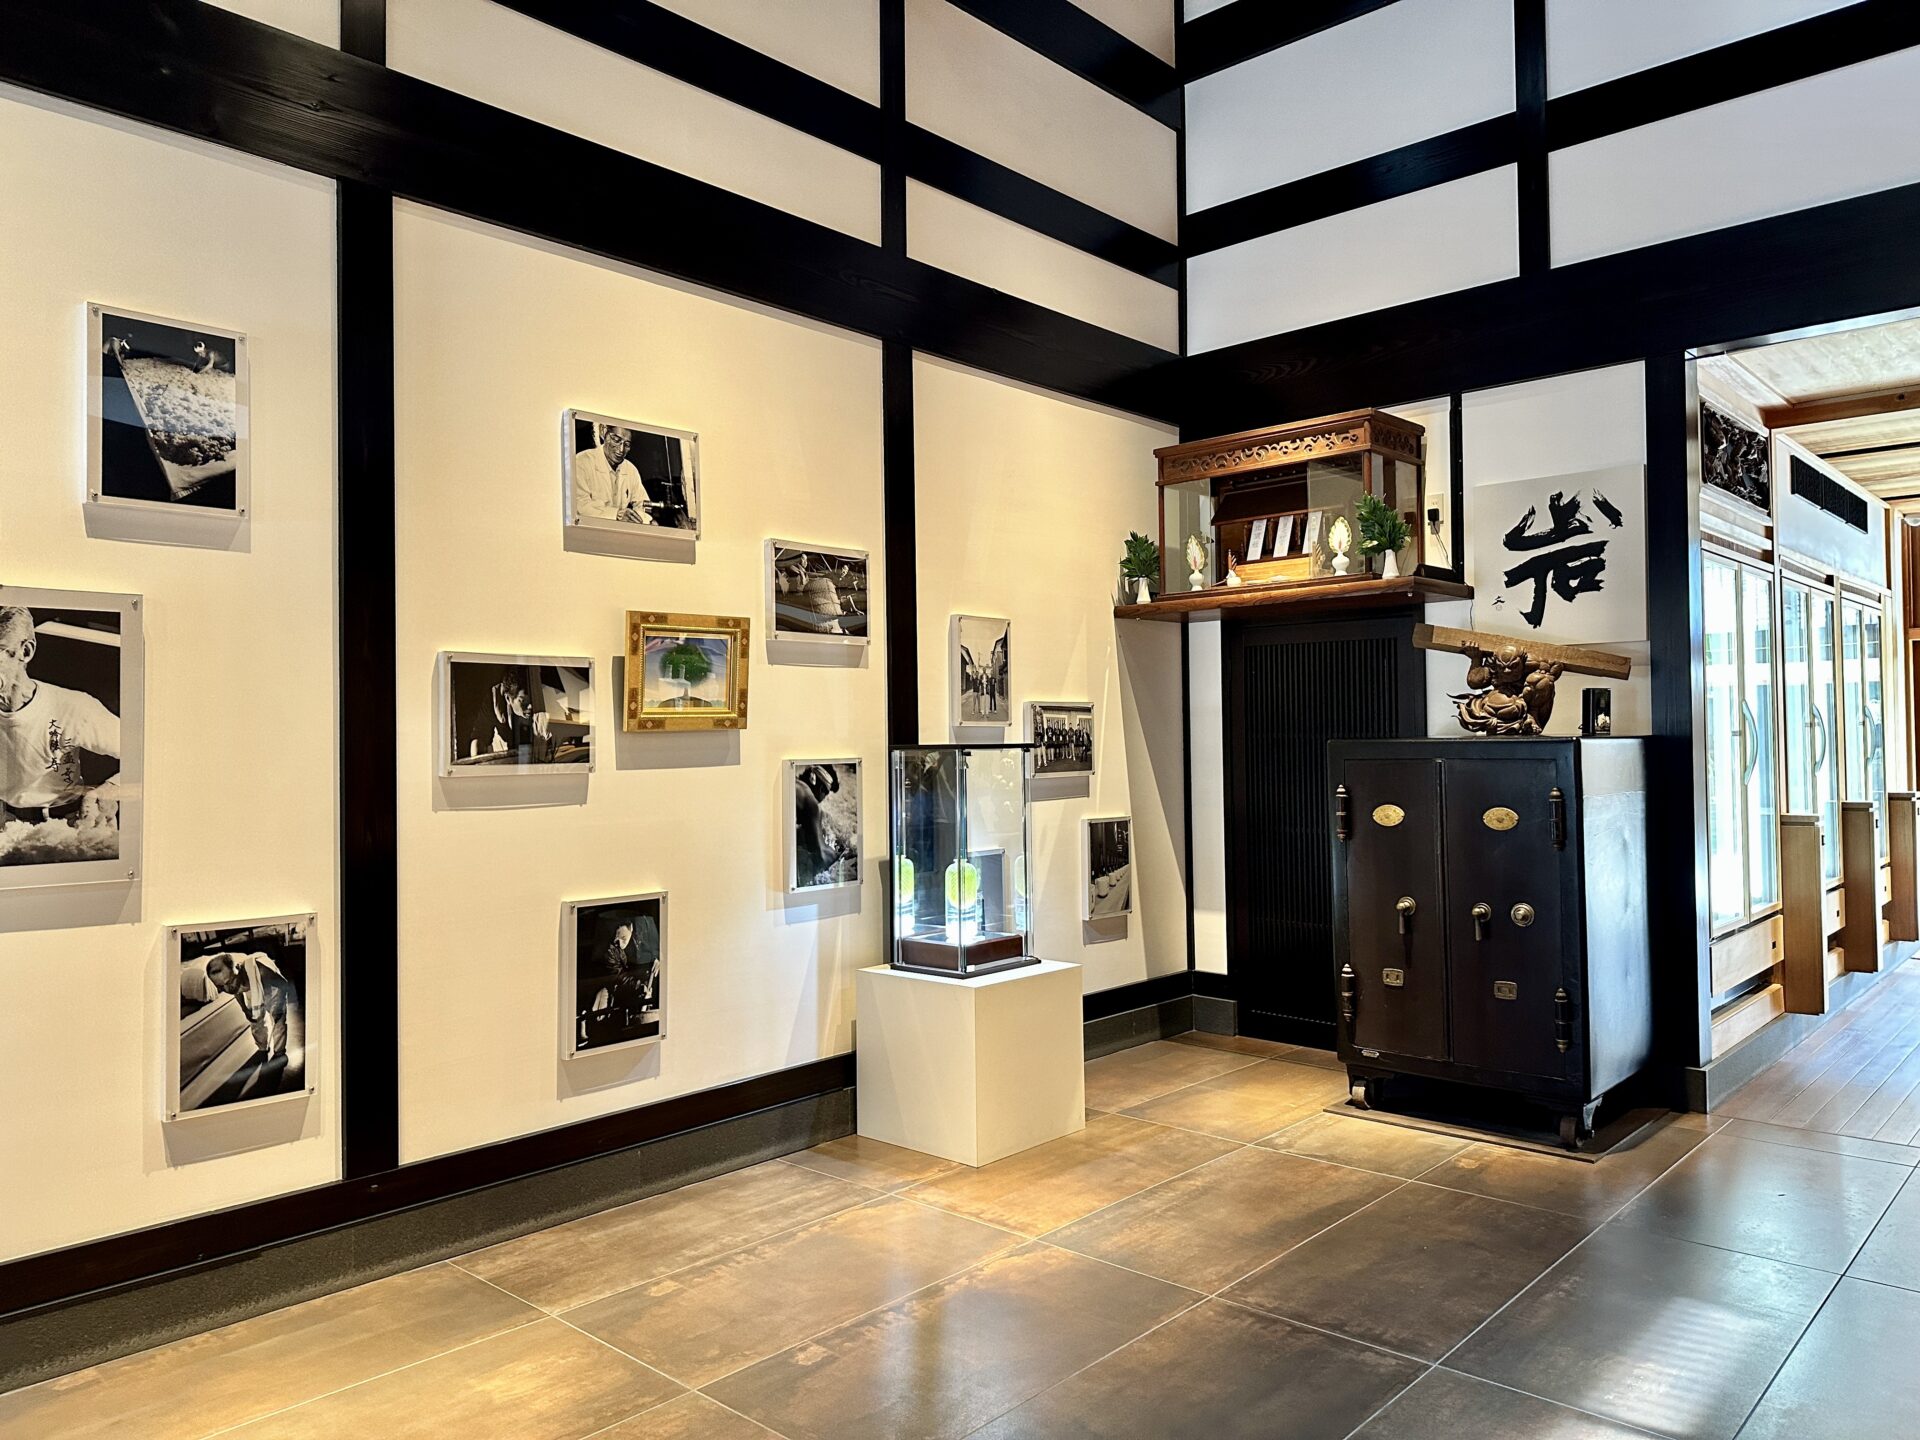 桝田酒造店 沙石(させき) 店内の様子 写真と調度品